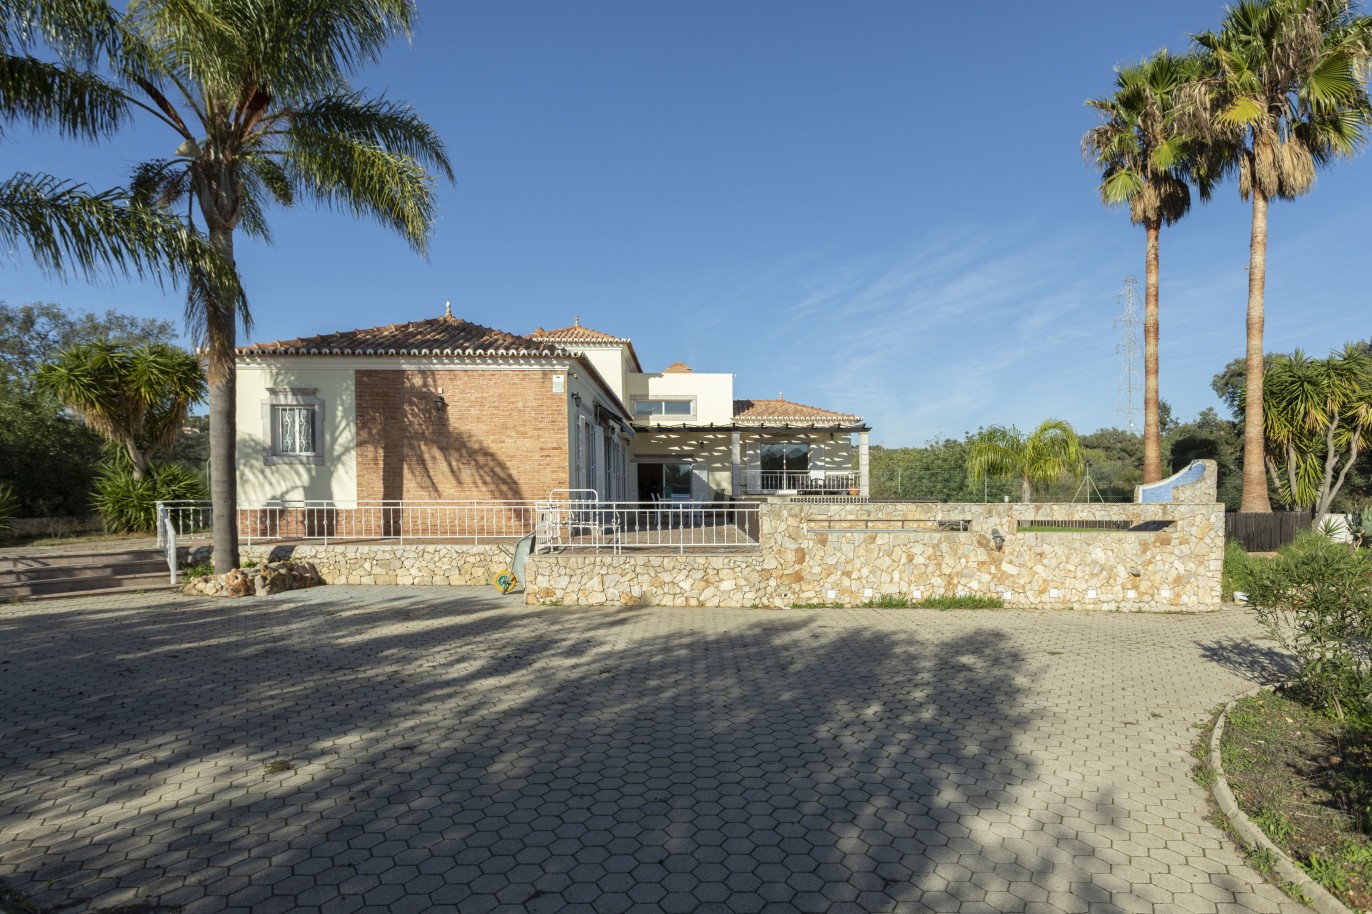 Moradia V4 com piscina, para venda em São Brás de Alportel, Algarve_245018